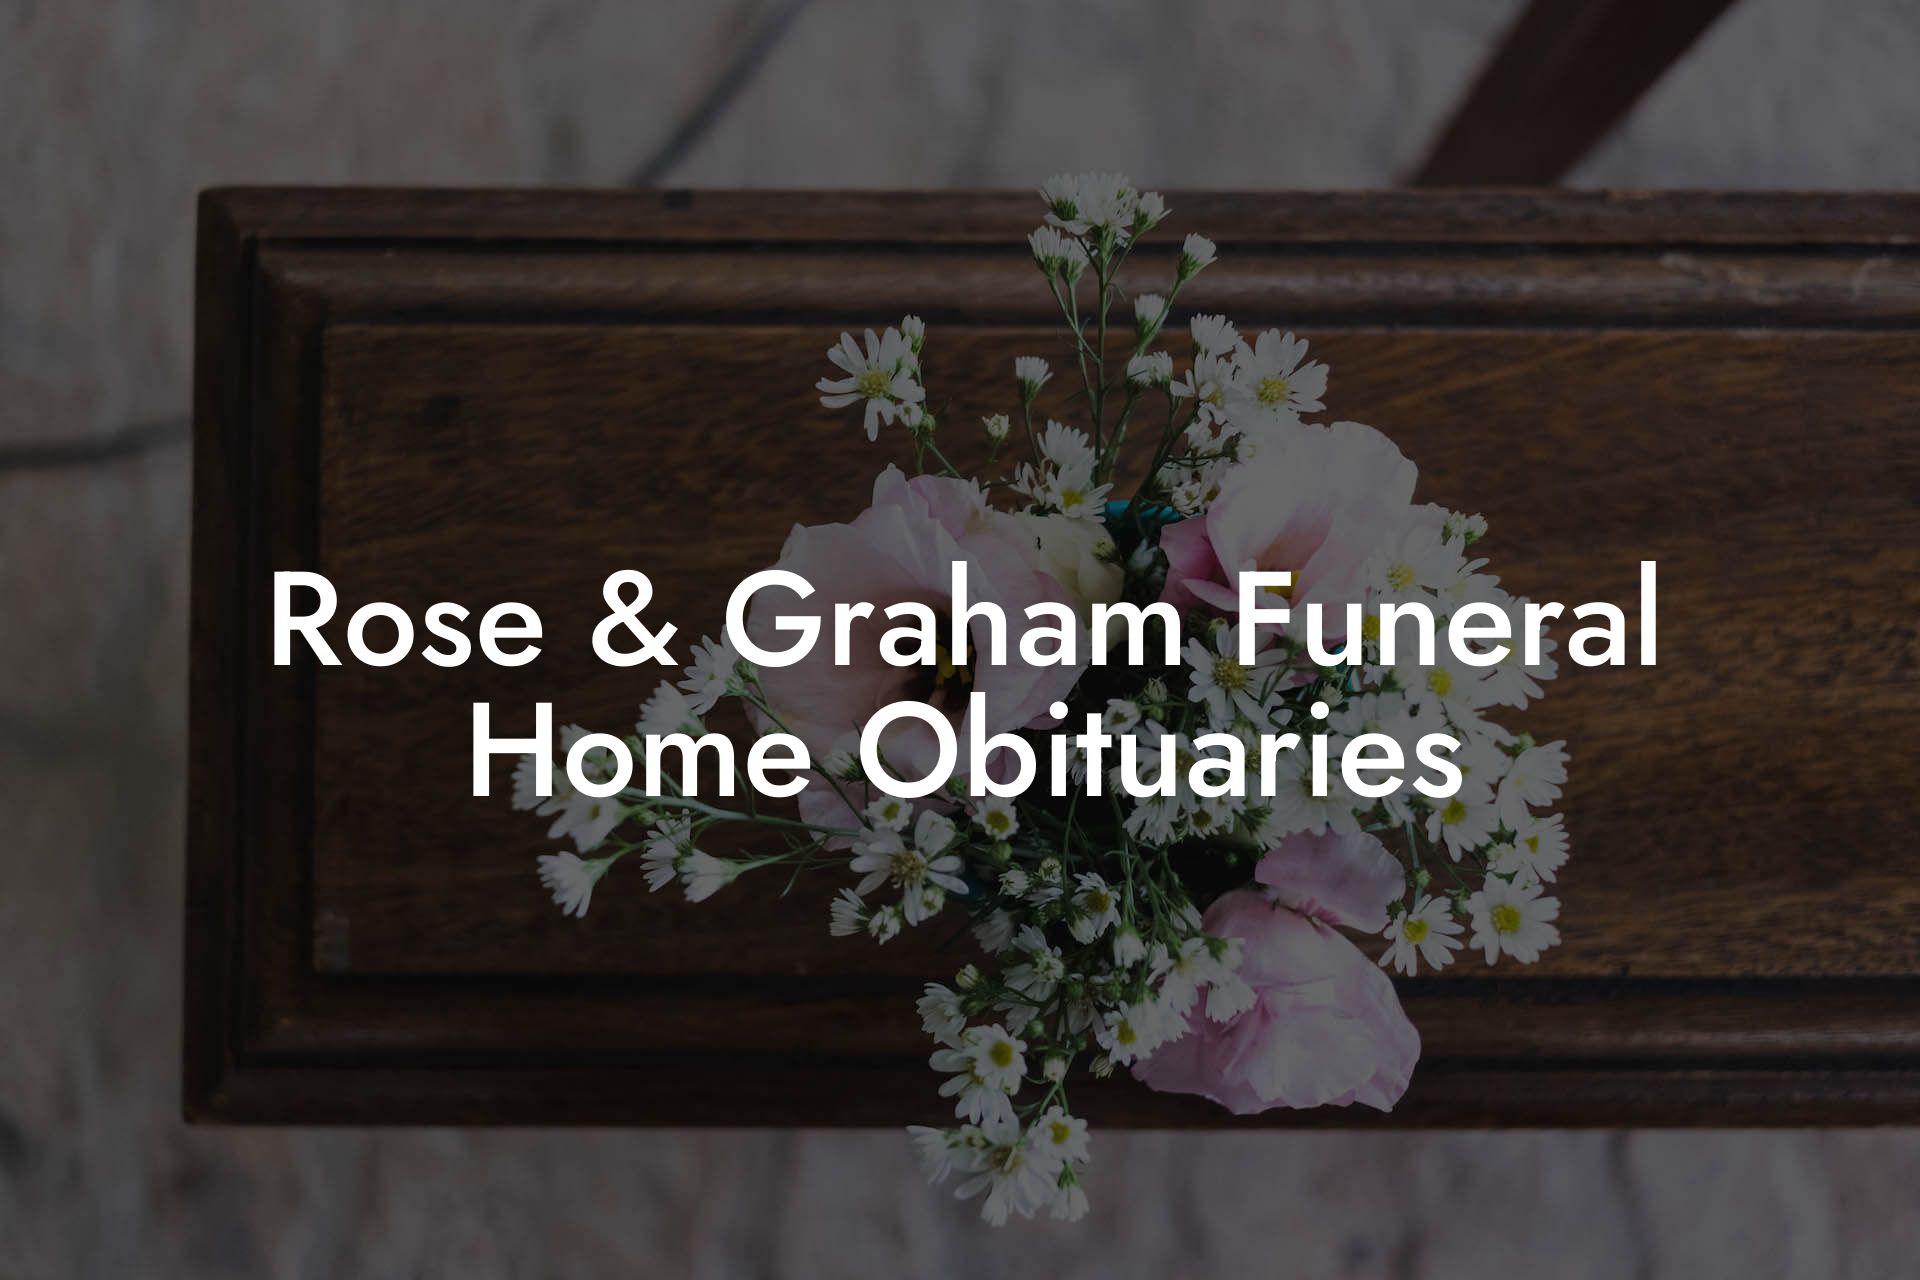 Rose & Graham Funeral Home Obituaries